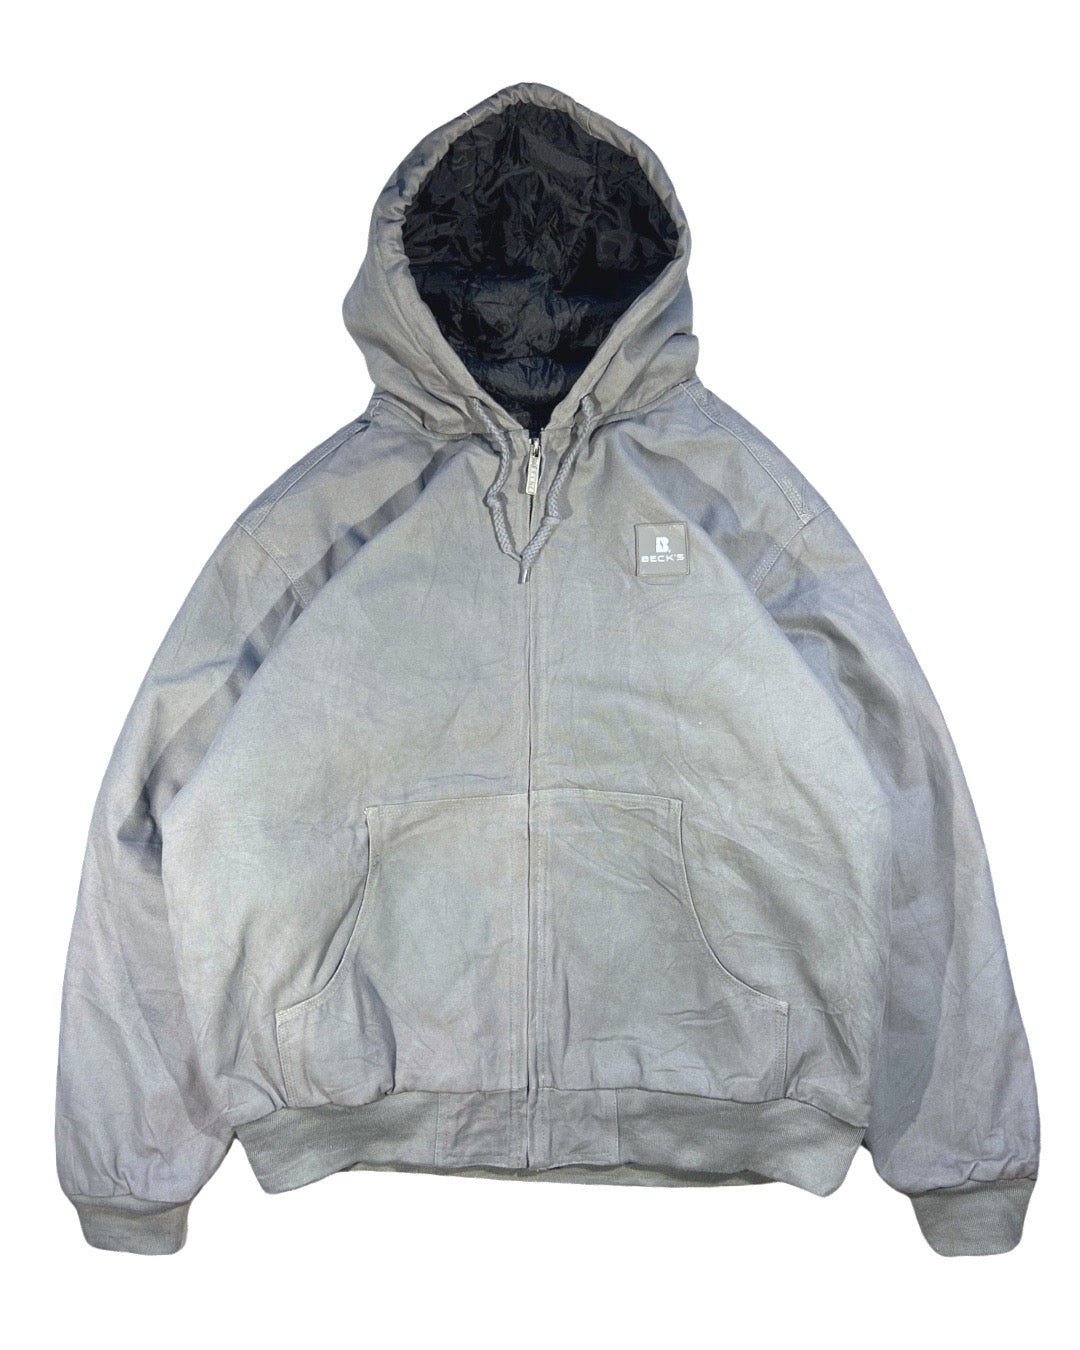 Vintage Hooded Work Jacket - XL